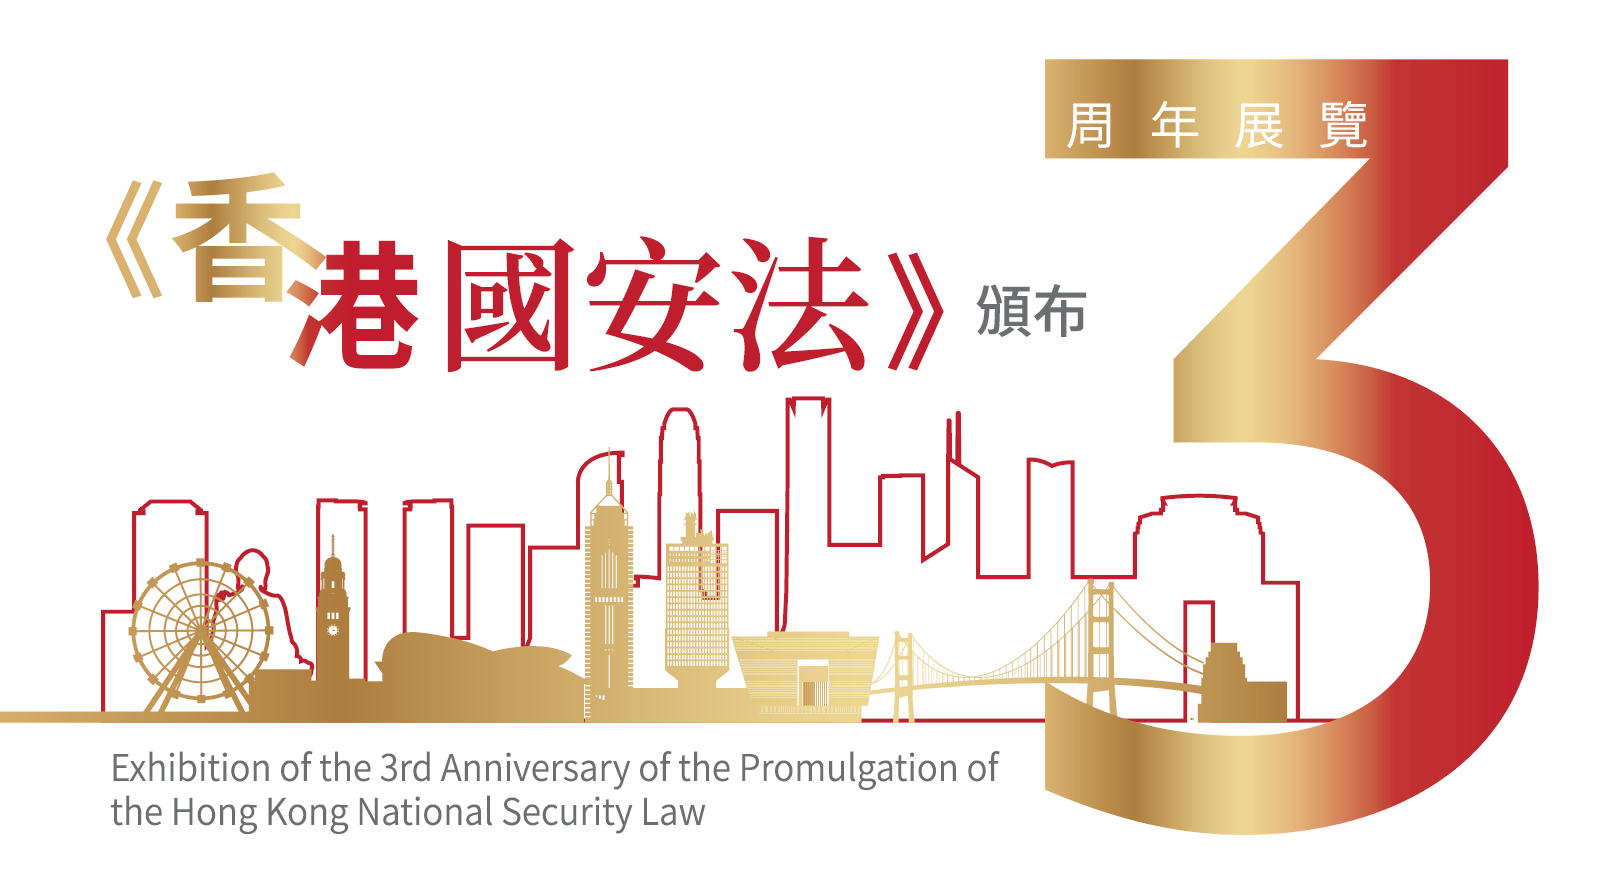 適逢《香港國安法》實施三周年，保安局今日（七月五日）推出以香港故宮文化博物館為虛擬場景的《香港國安法》網上虛擬展覽更新版，令參觀者能有嶄新的參觀體驗。圖示有關網上虛擬展覽的宣傳設計。